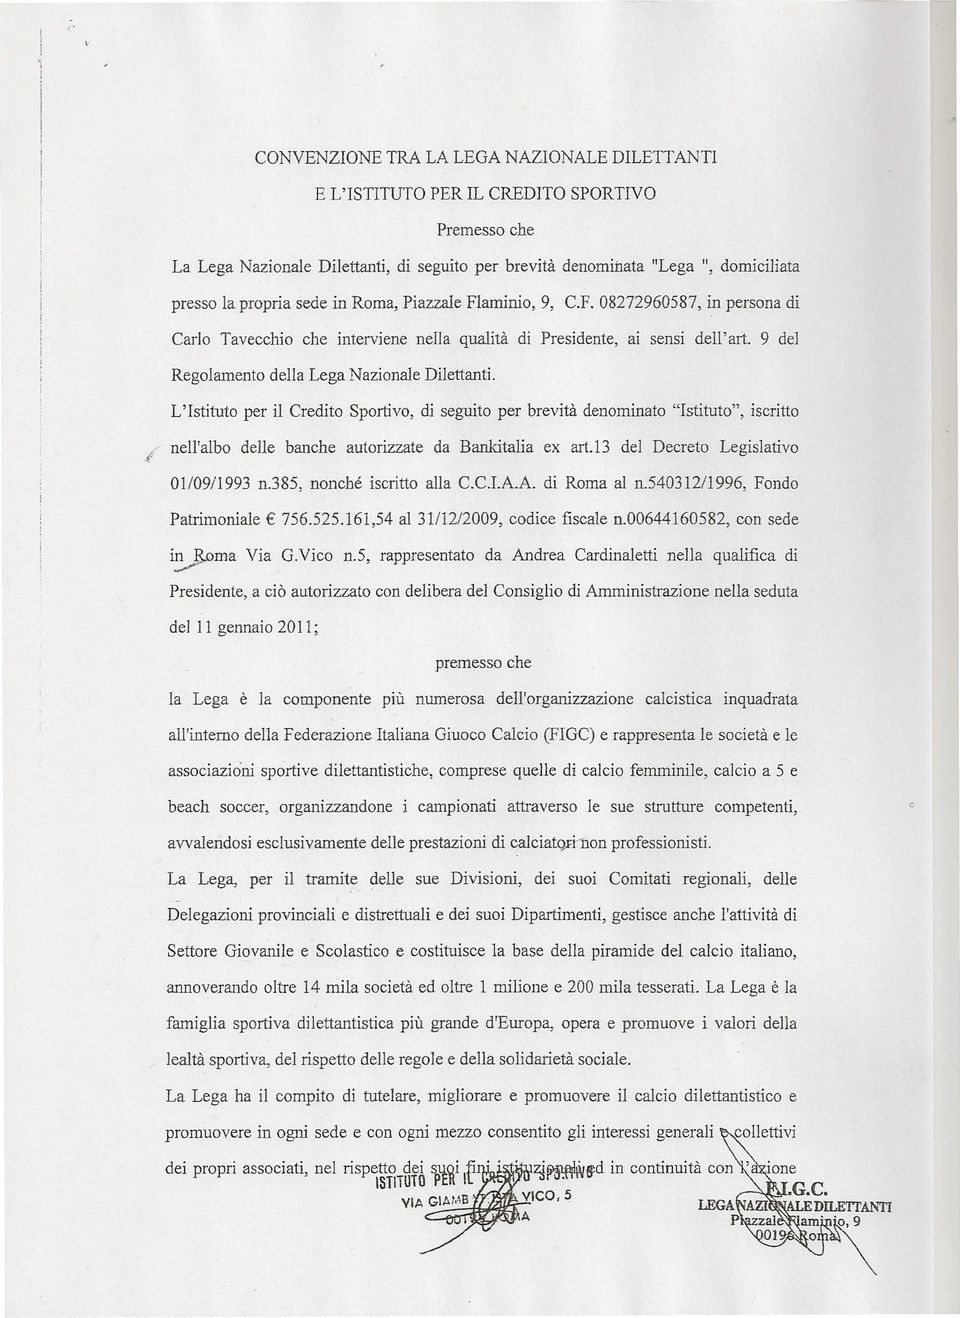 L'Istituto per il Credito Sportivo, di seguito per brevità denominato "Istituto", iscritto J..;: nell'albo delle banche autorizzate da Bankitalia ex art.l3 del Decreto Legislativo 01/09/1993 n.